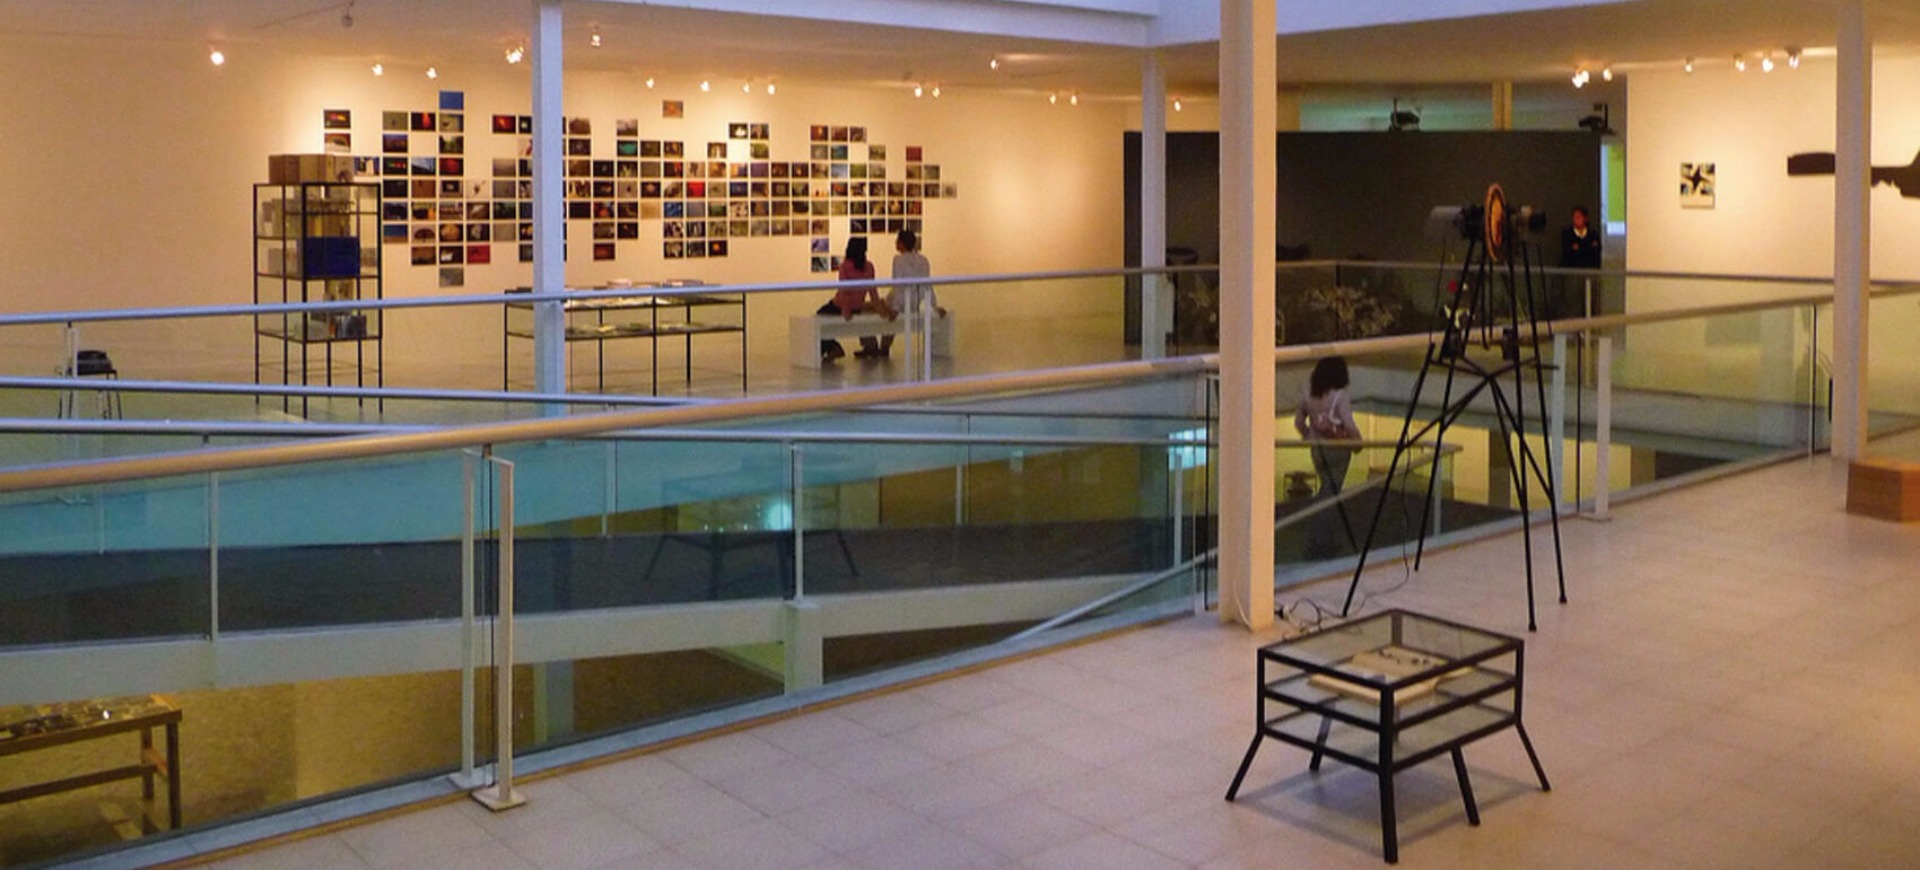 Museo de Arte Carrillo Gil (MACG) | INBA - Instituto Nacional de Bellas Artes